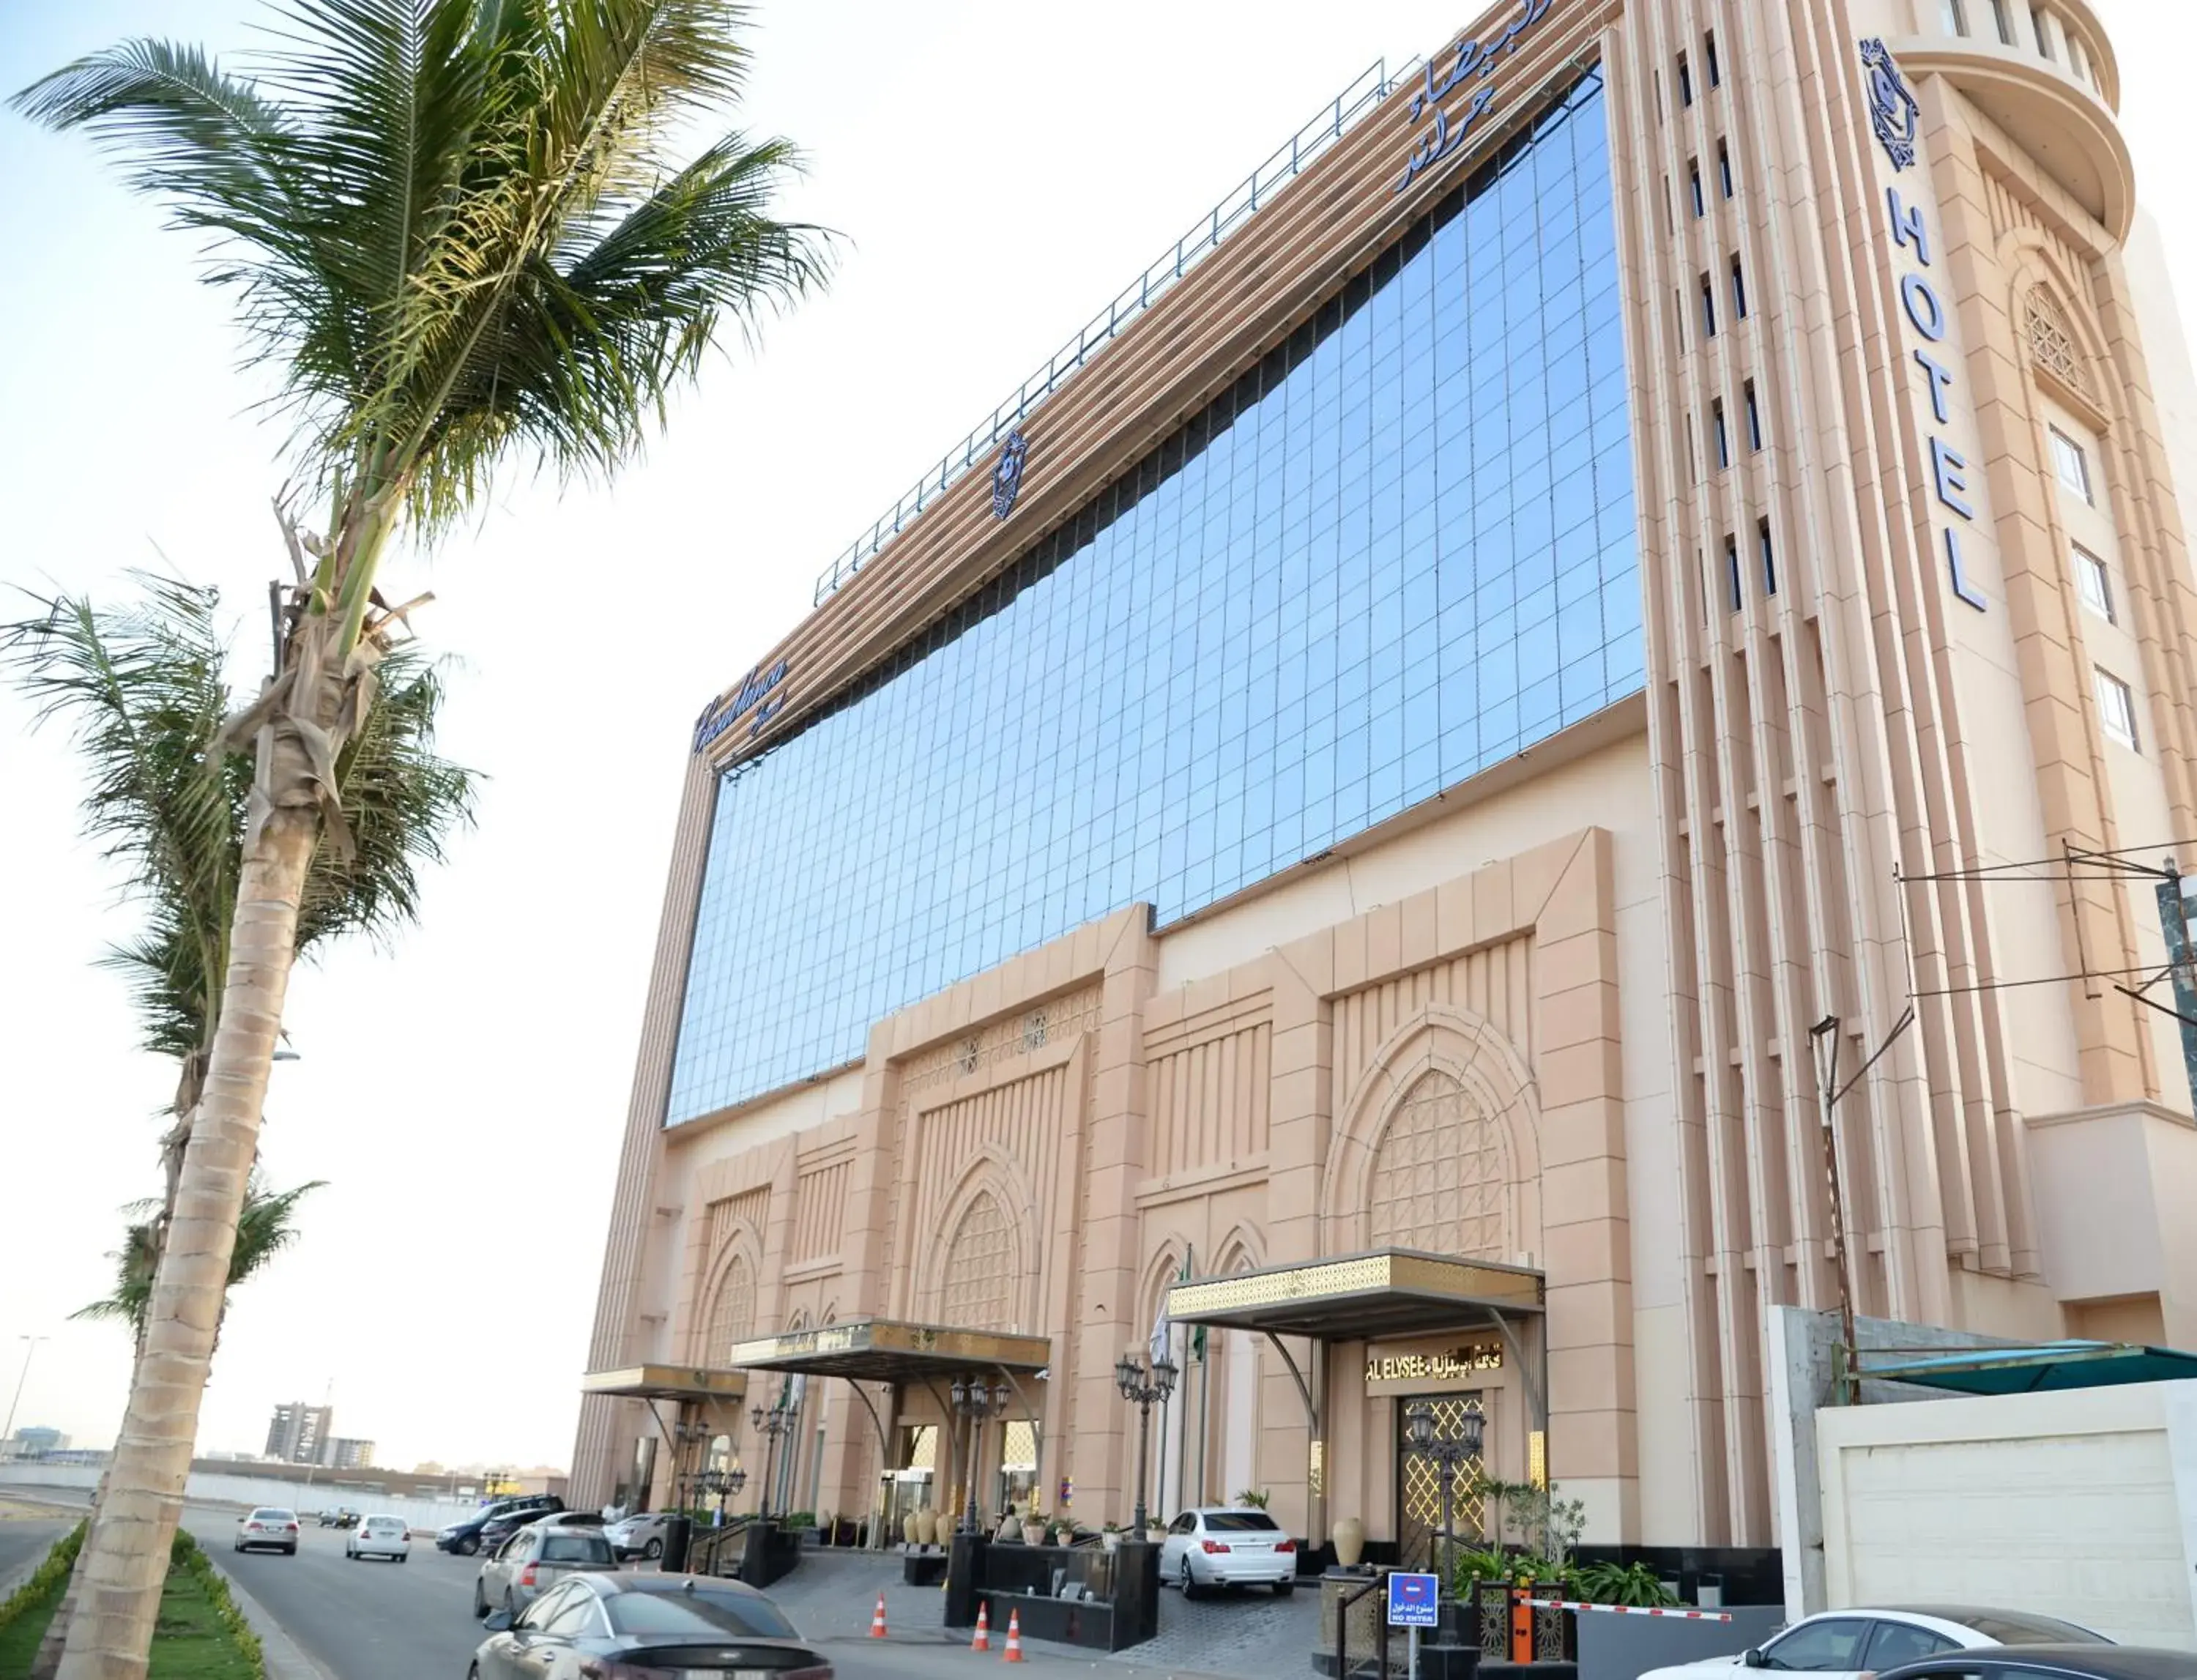 Property Building in Casablanca Grand Hotel